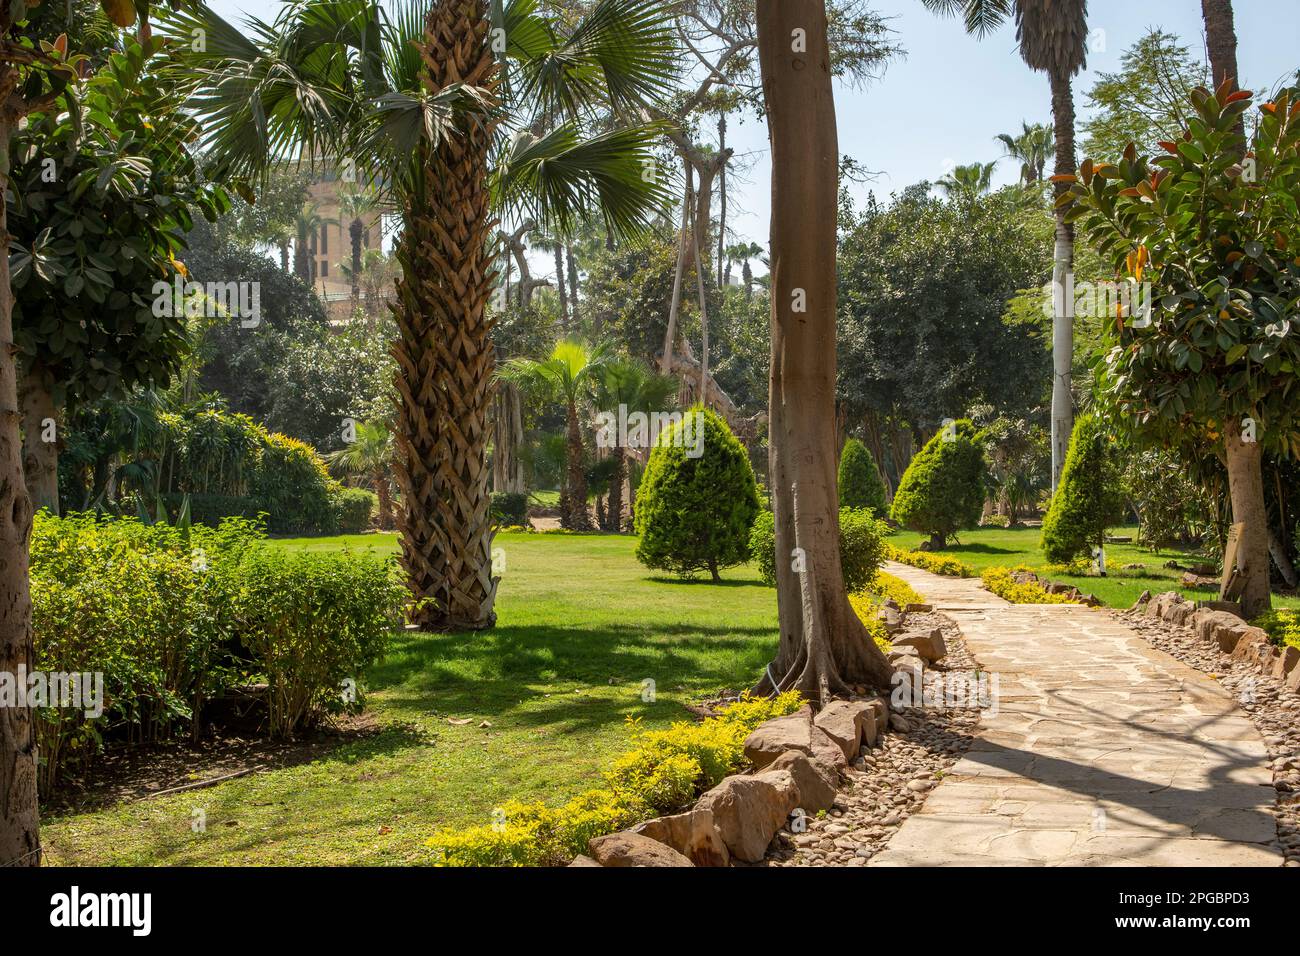 Gardens at Palace of Muhammad Ali, Cairo, Egypt Stock Photo